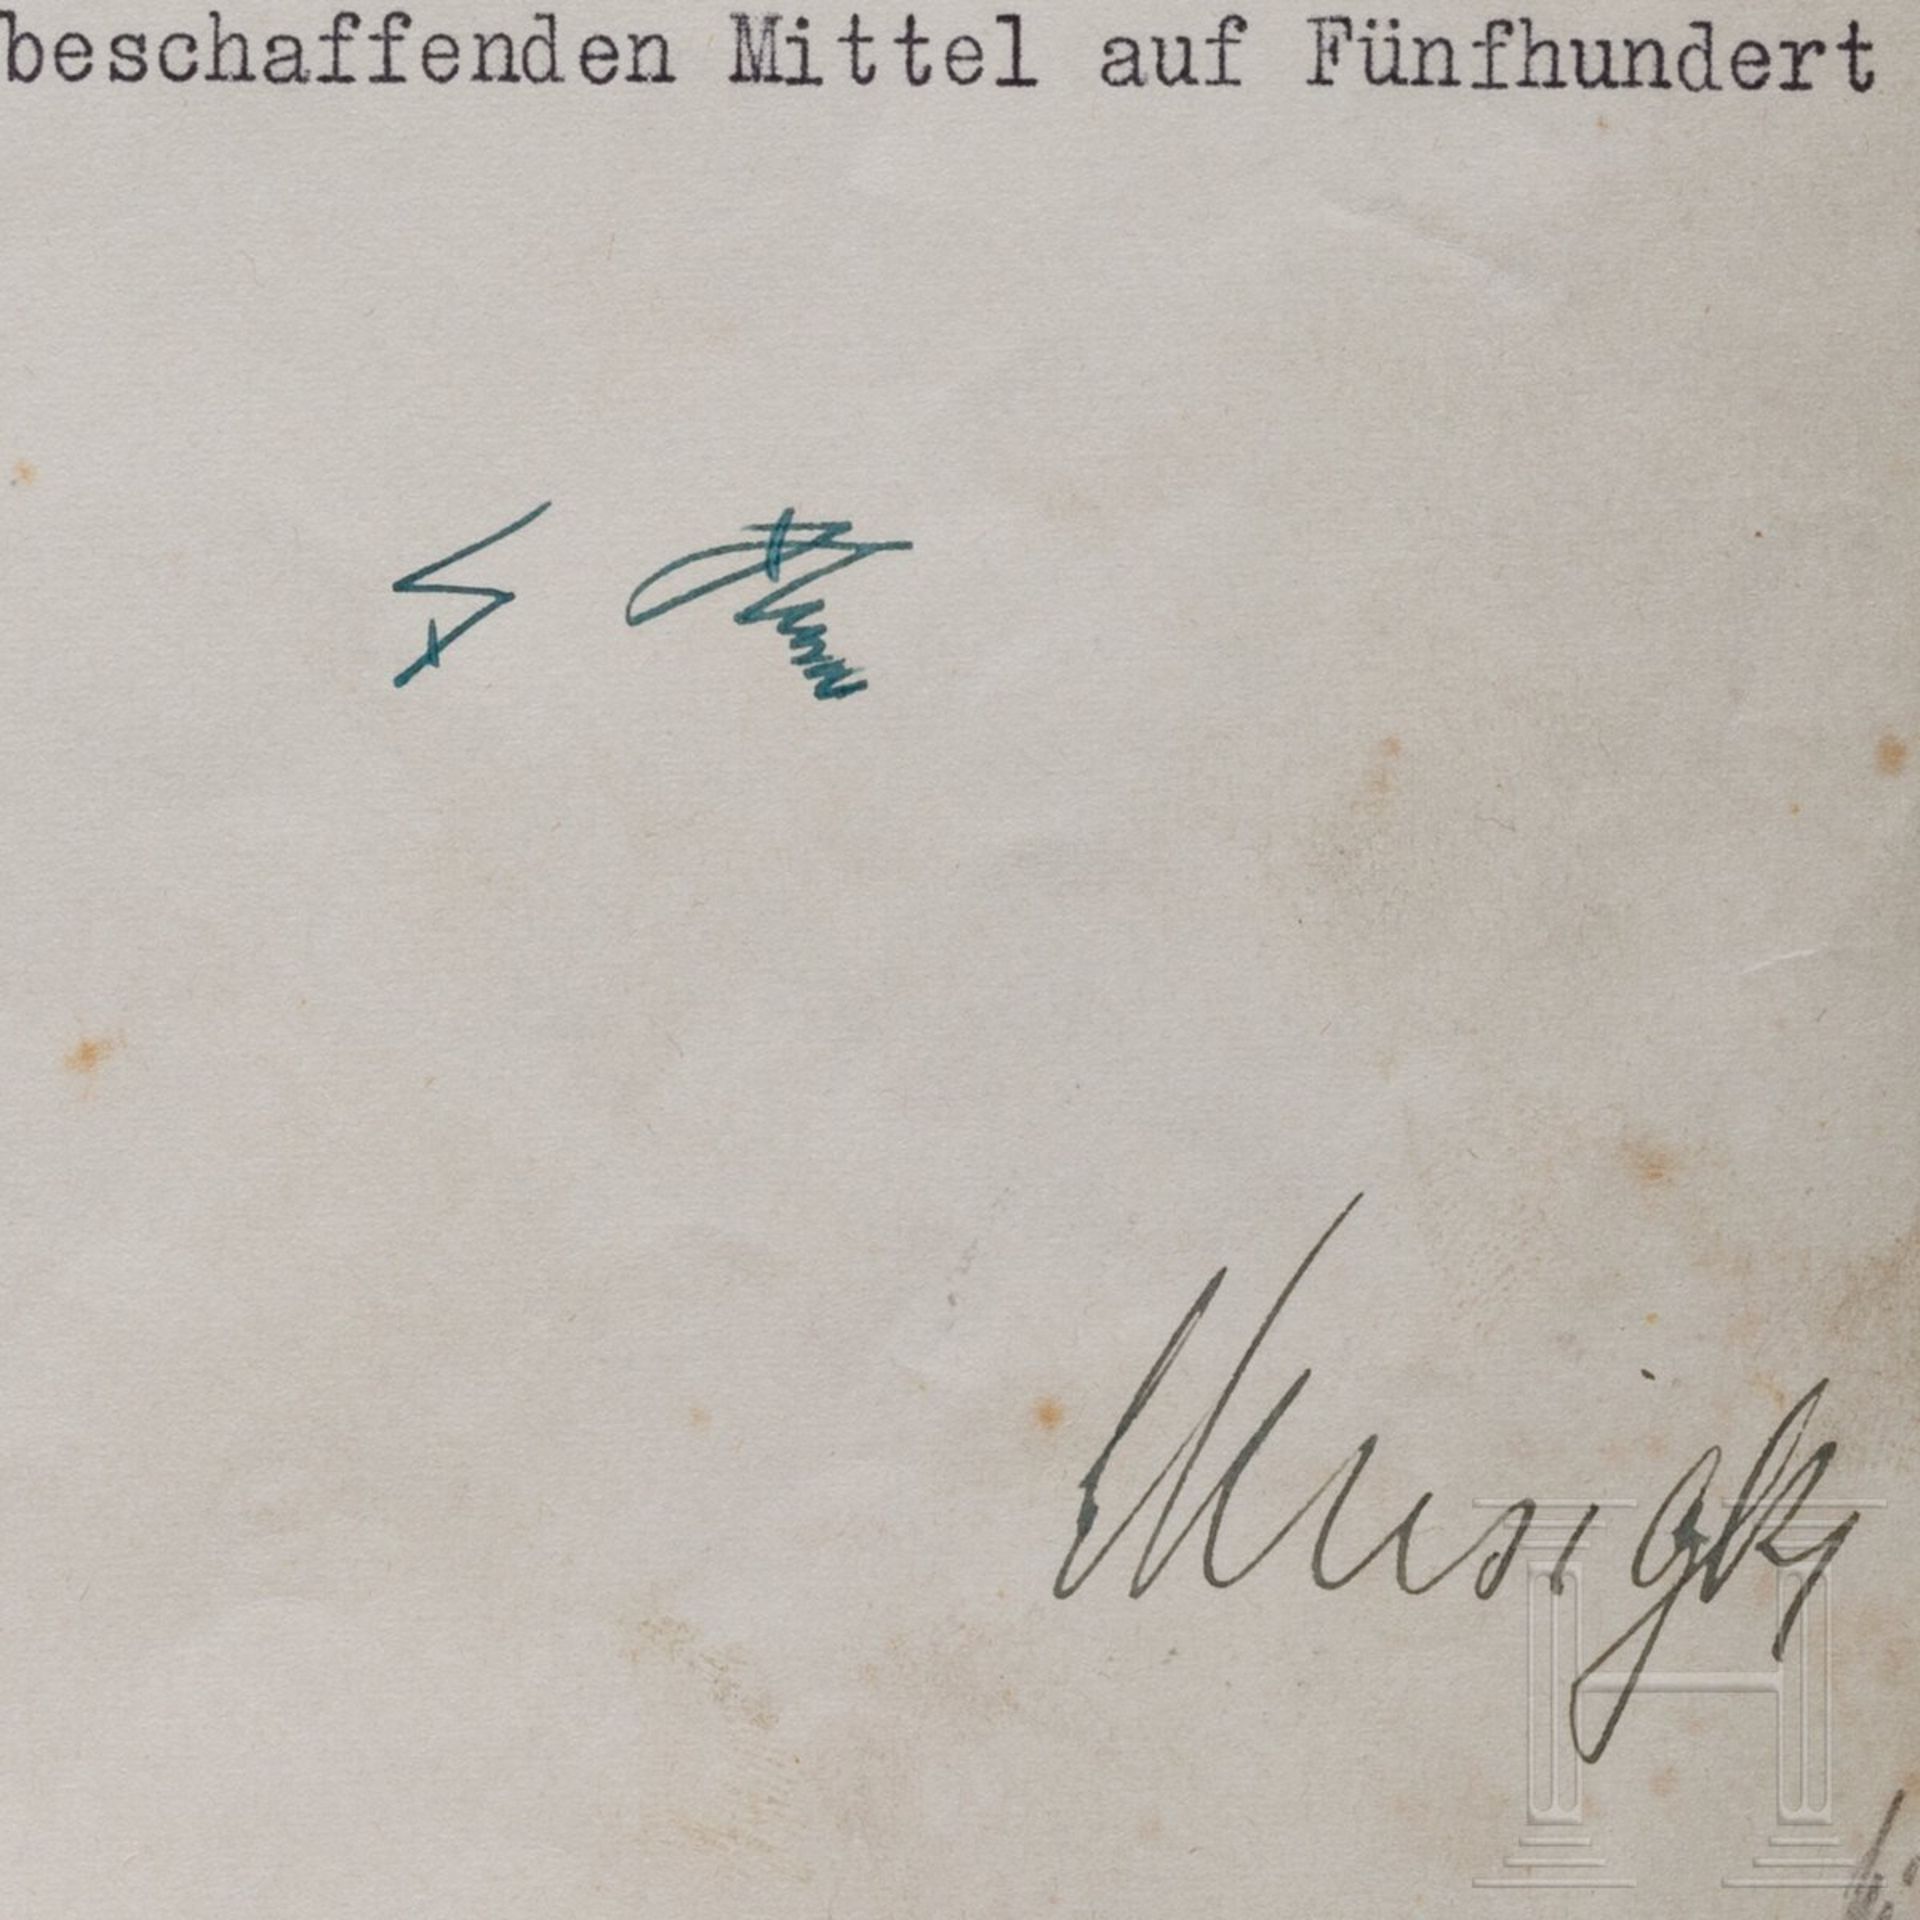 Adolf Hitler - Kreditermächtigung vom 11. Februar 1945 mit einer Erhöhung von 450 auf 500 Milliarden - Image 2 of 4